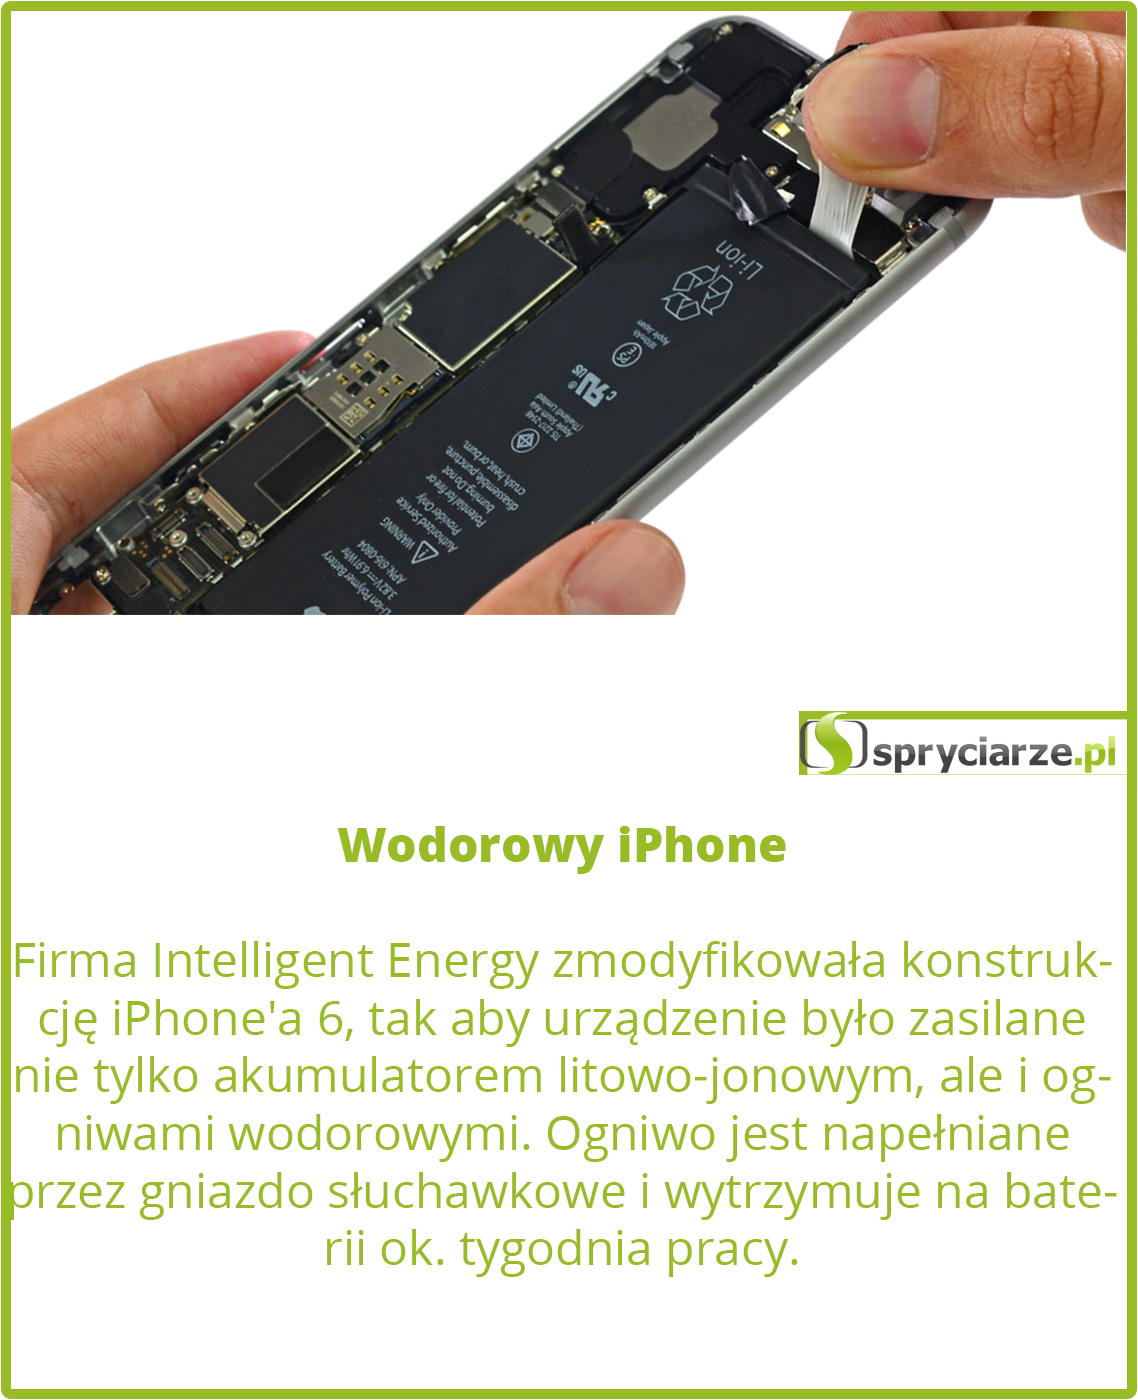 Wodorowy iPhone